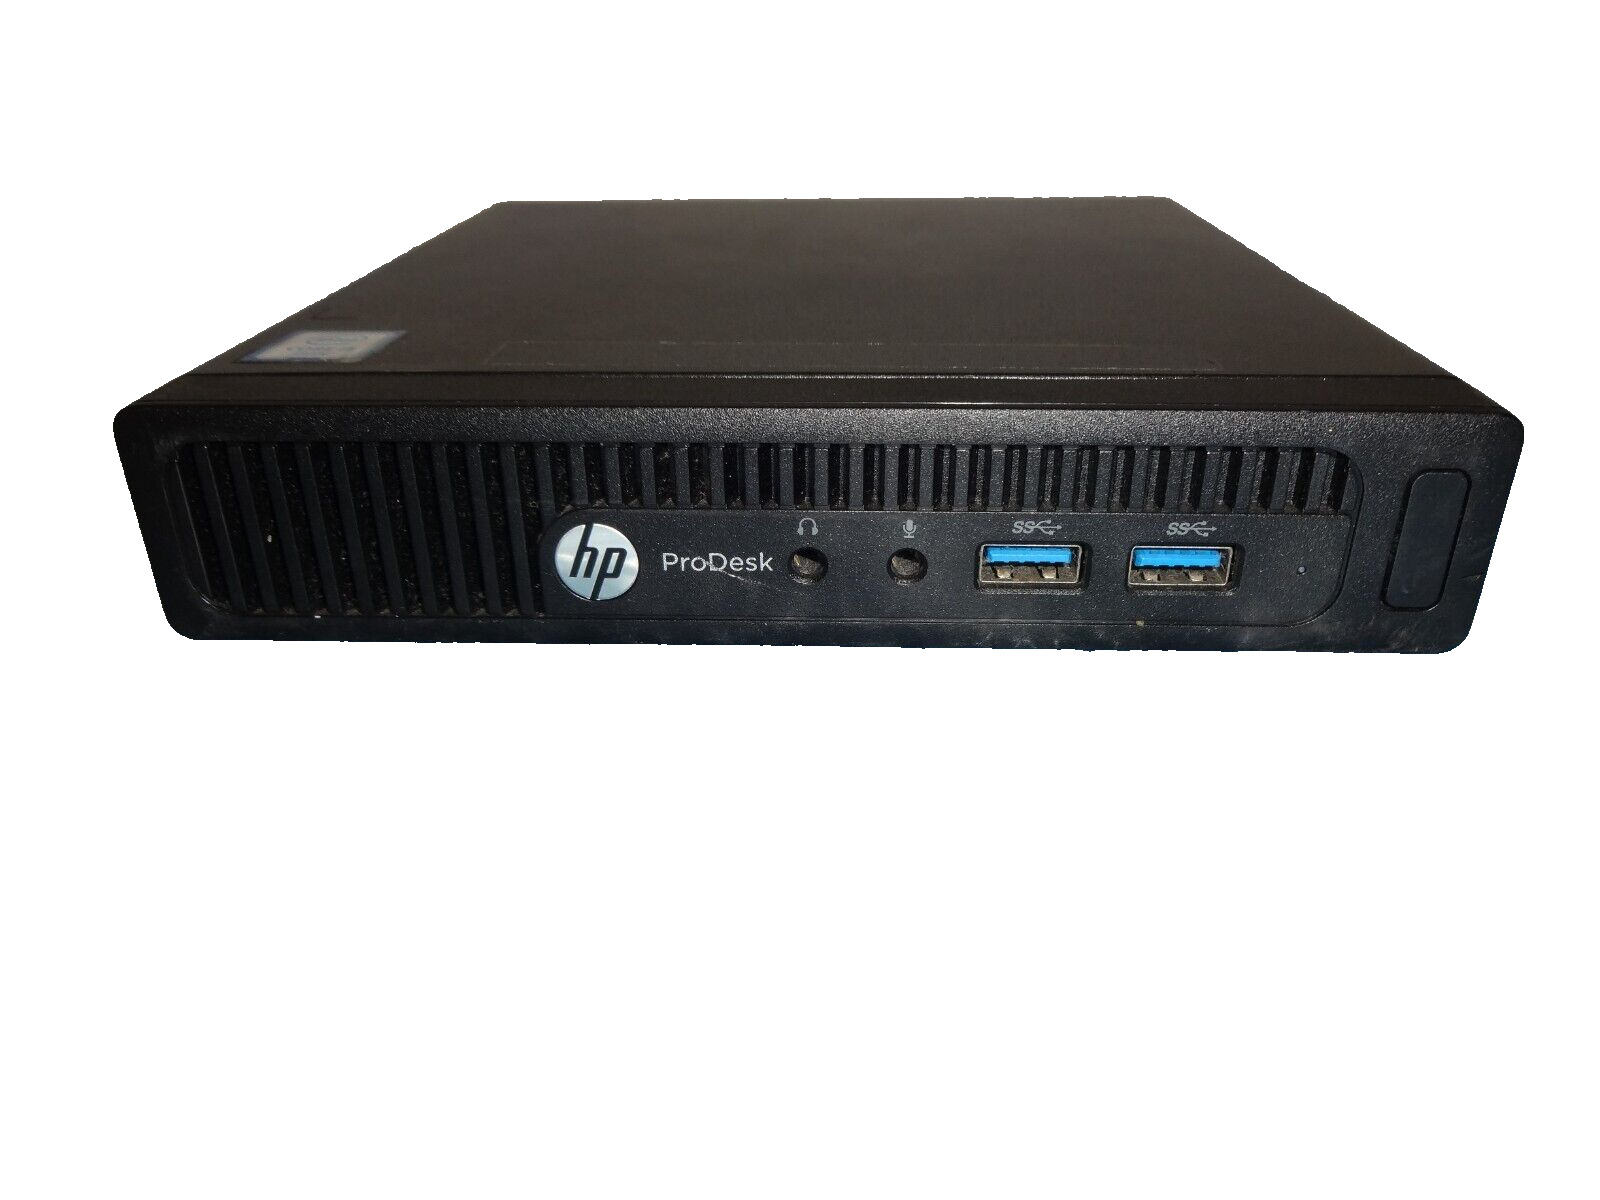 HP ProDesk 400 G2 Mini 65W i5-6500 3.2GHz 8GB RAM 256GB SSD Windows 10 WiFi